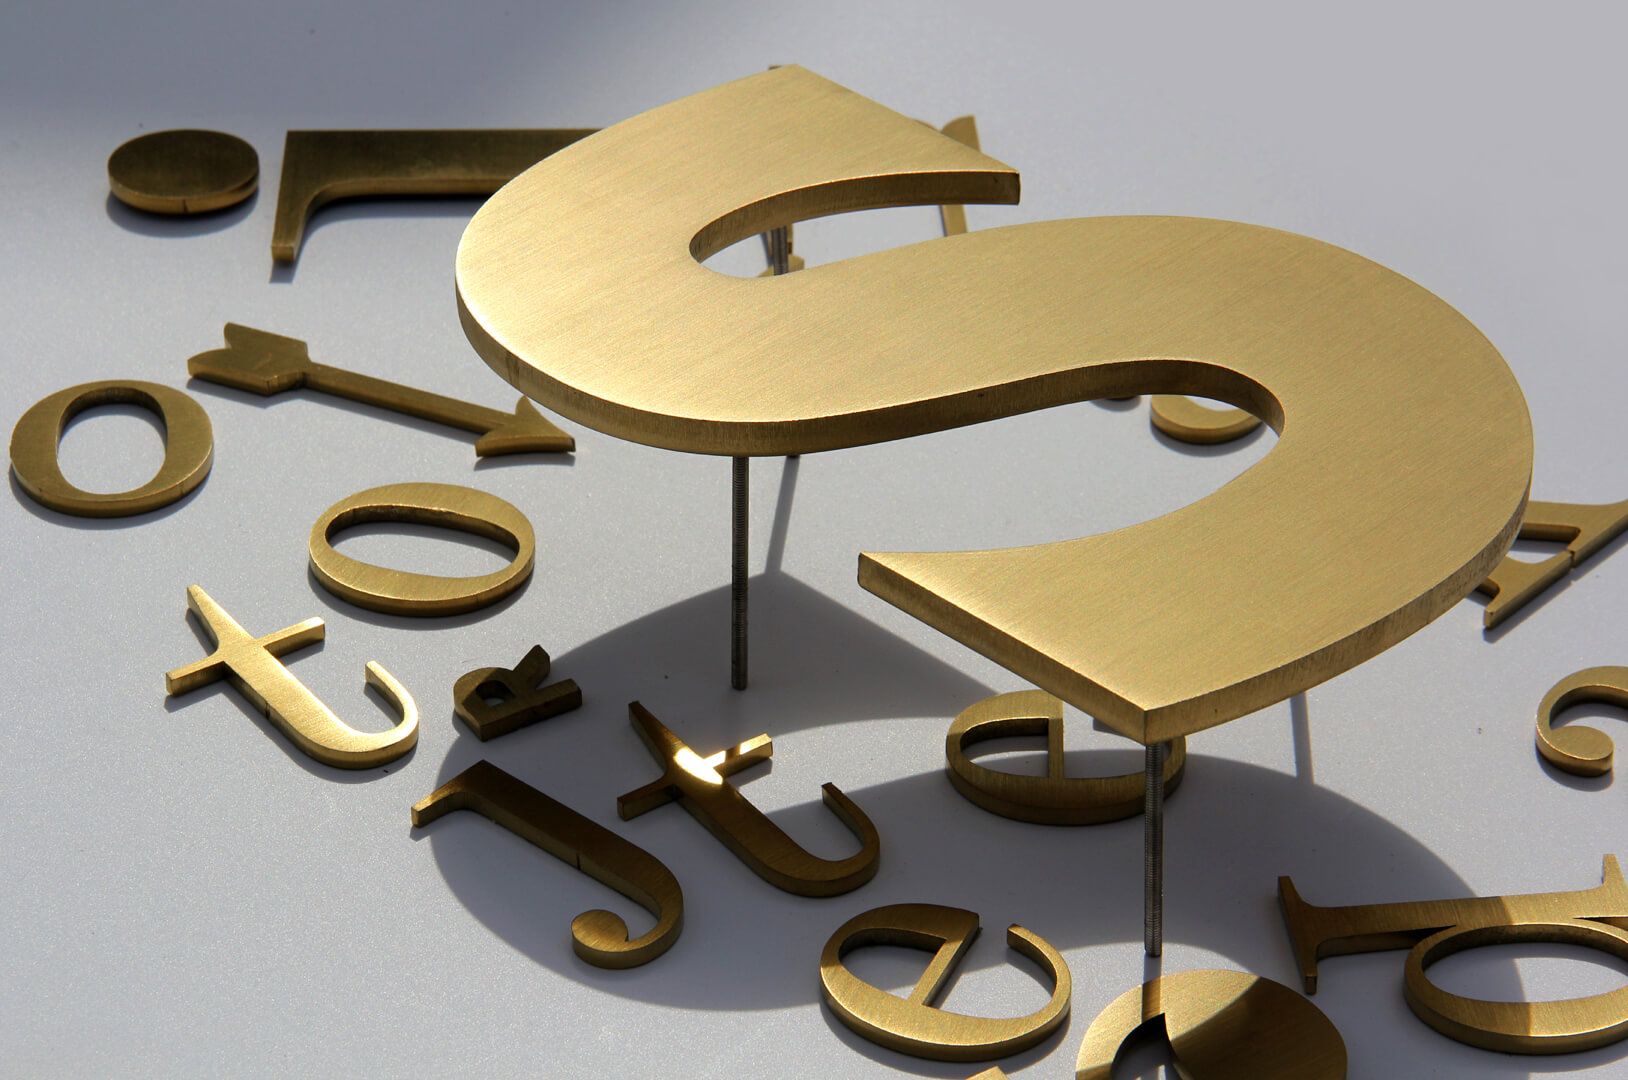 Litery złote - Metalowe litery w kolorze złotym, styl industrialny.